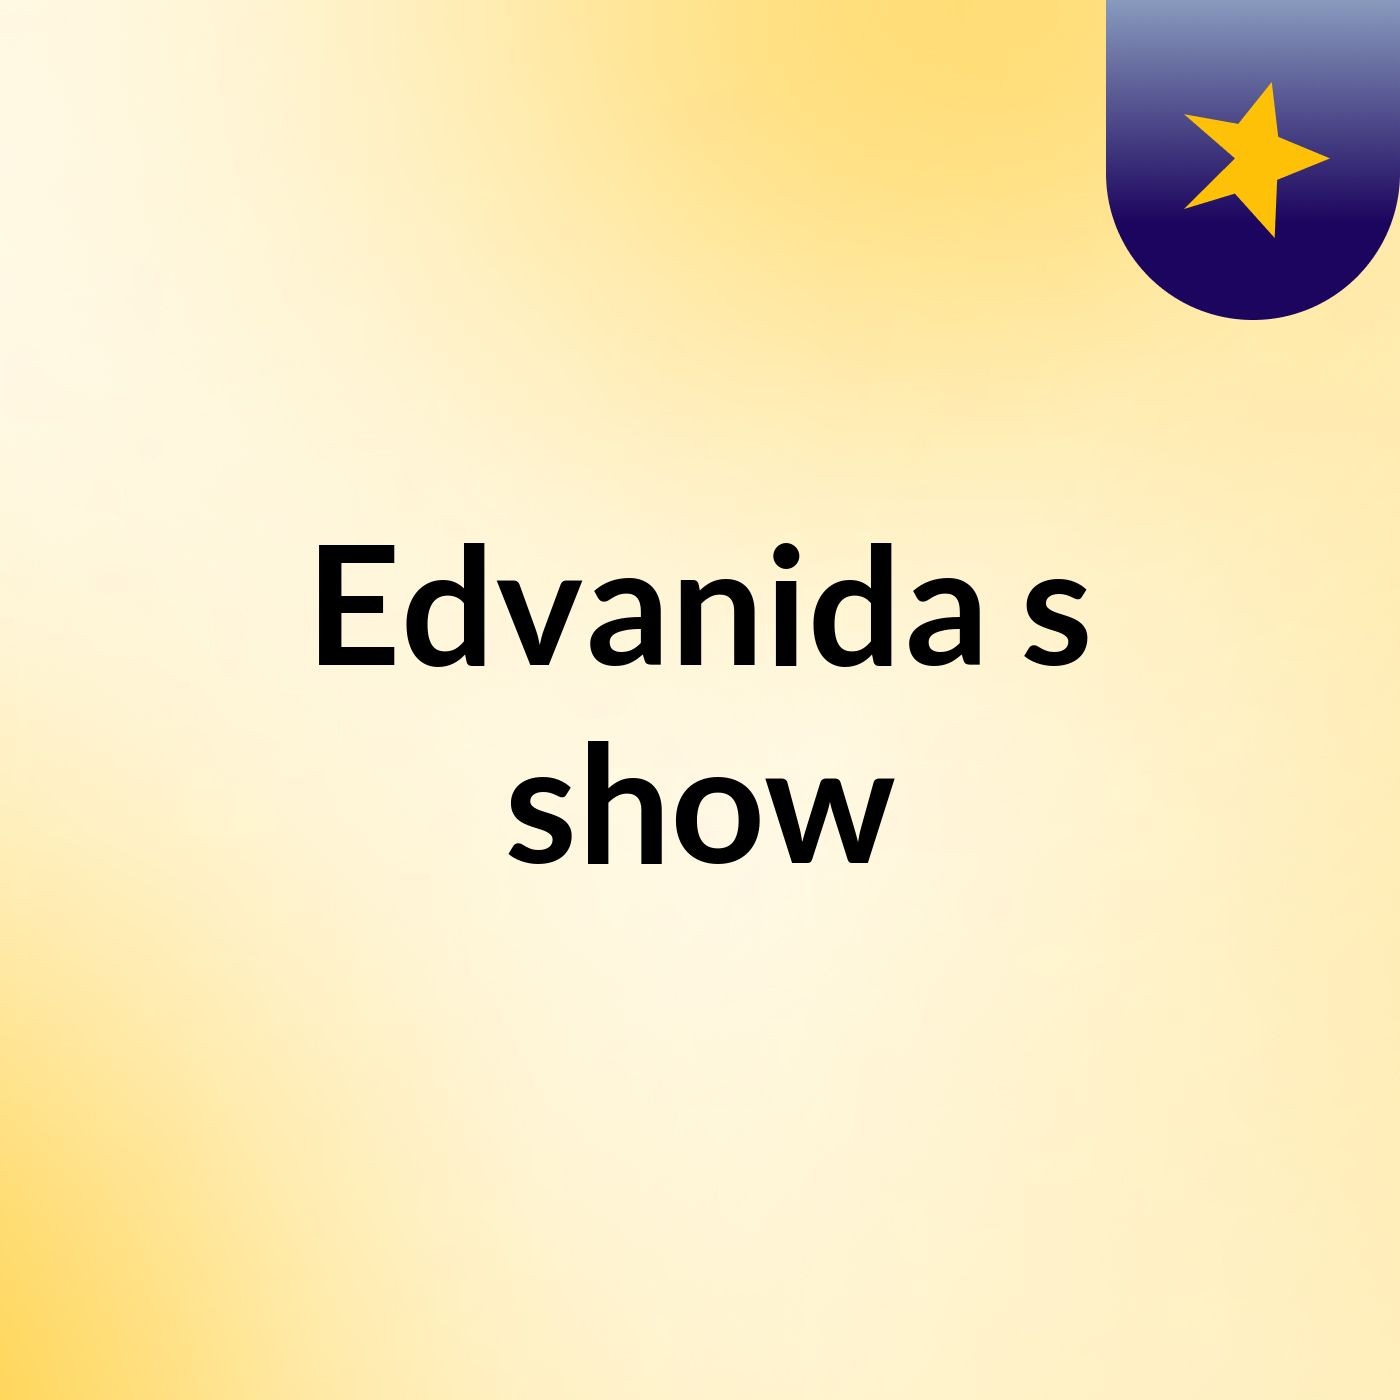 Edvanida's show